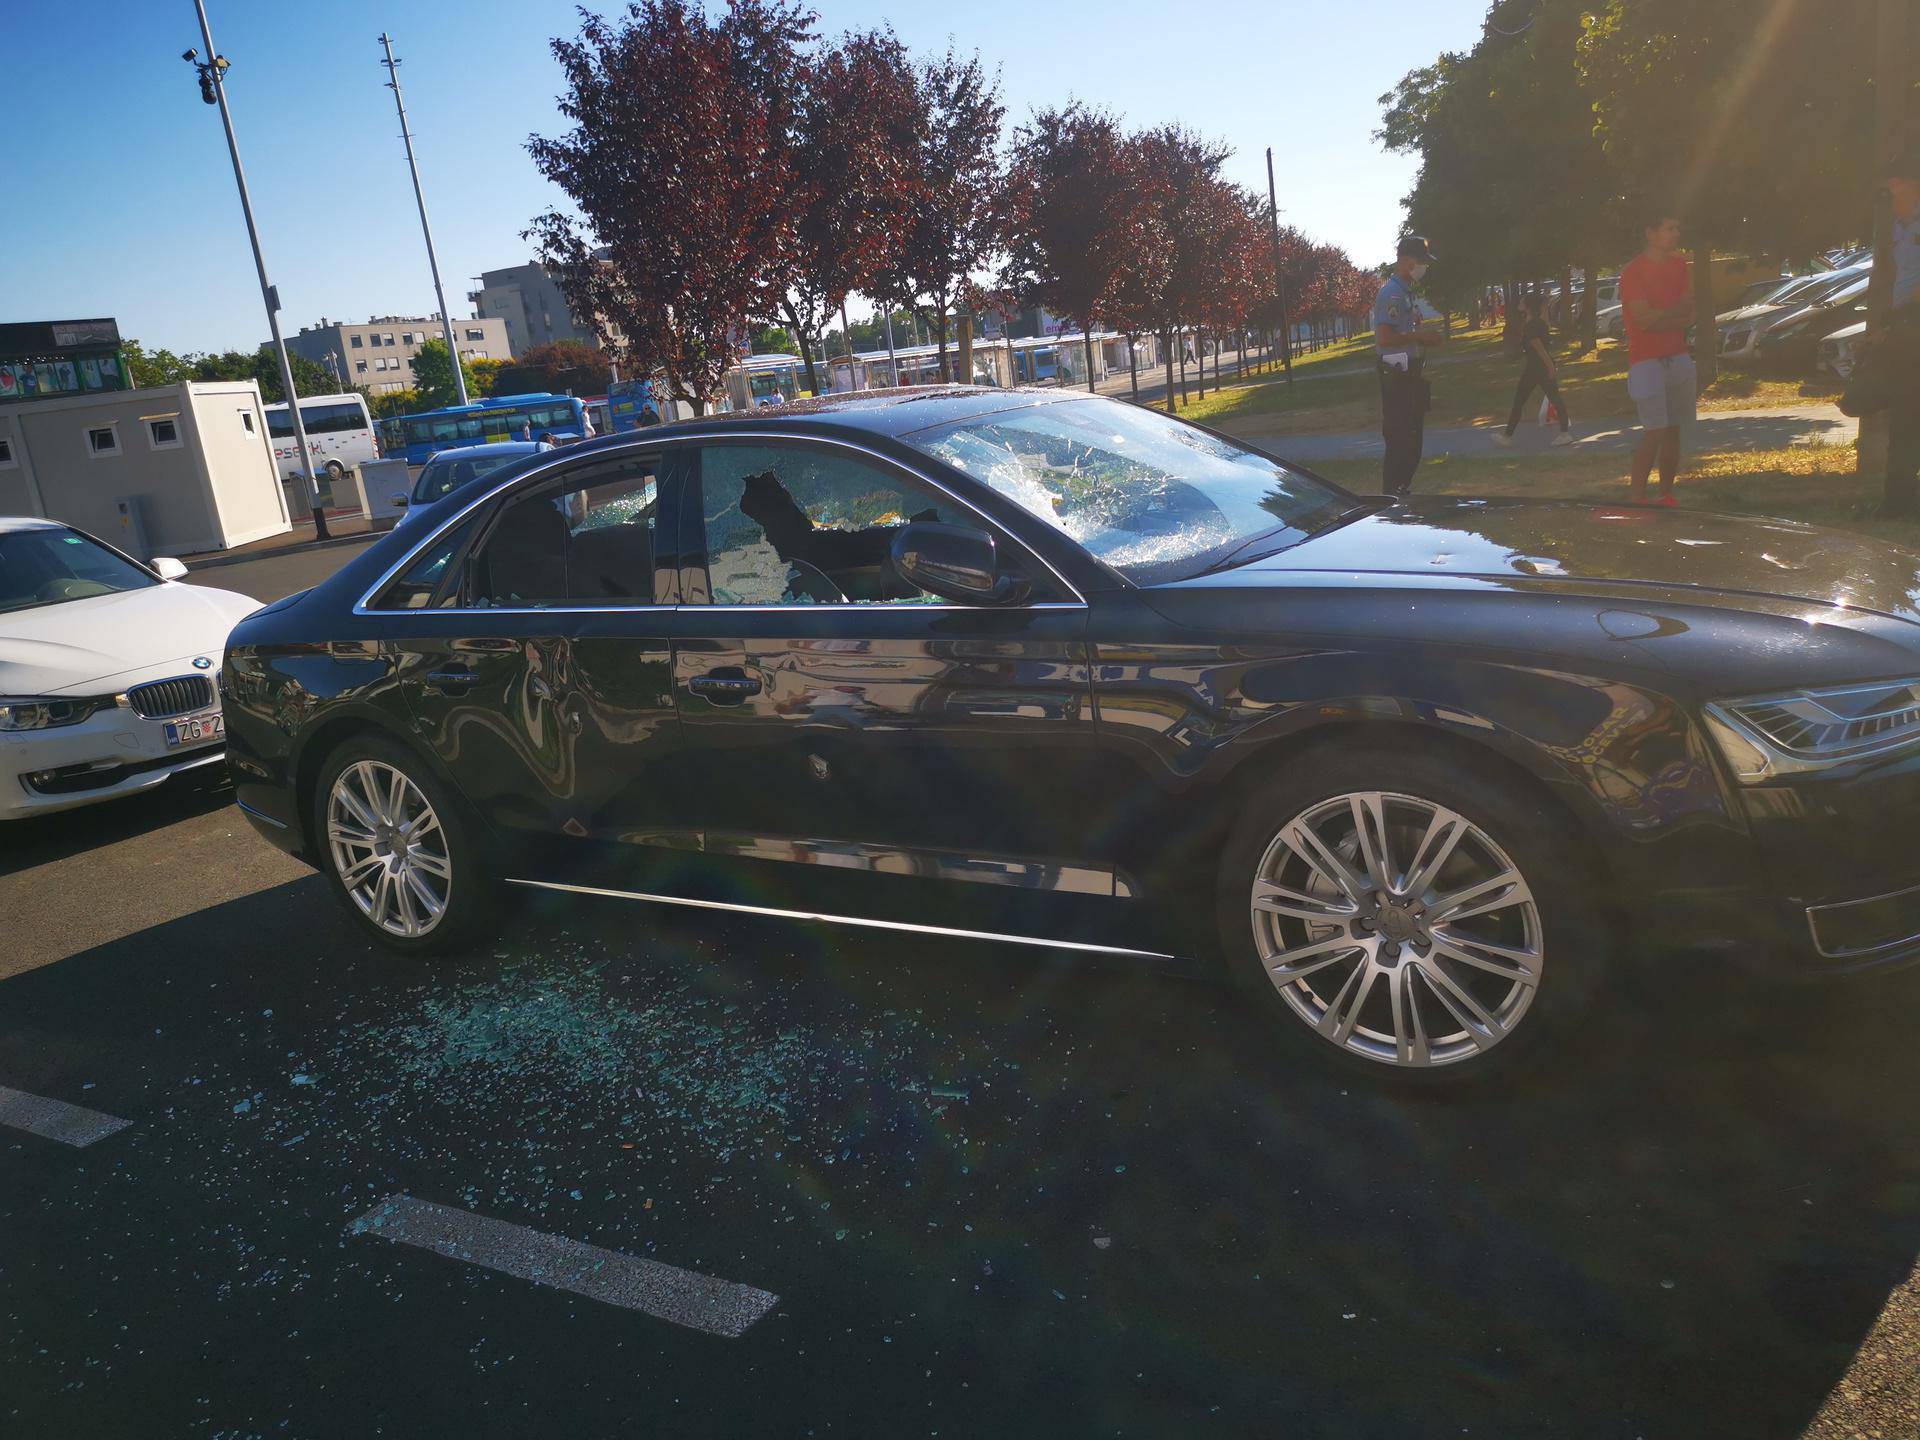 Zagreb: Bijesni radnik sjekirom je demolirao Audi. Mislio je da je šefov. Uništio je krivi auto!